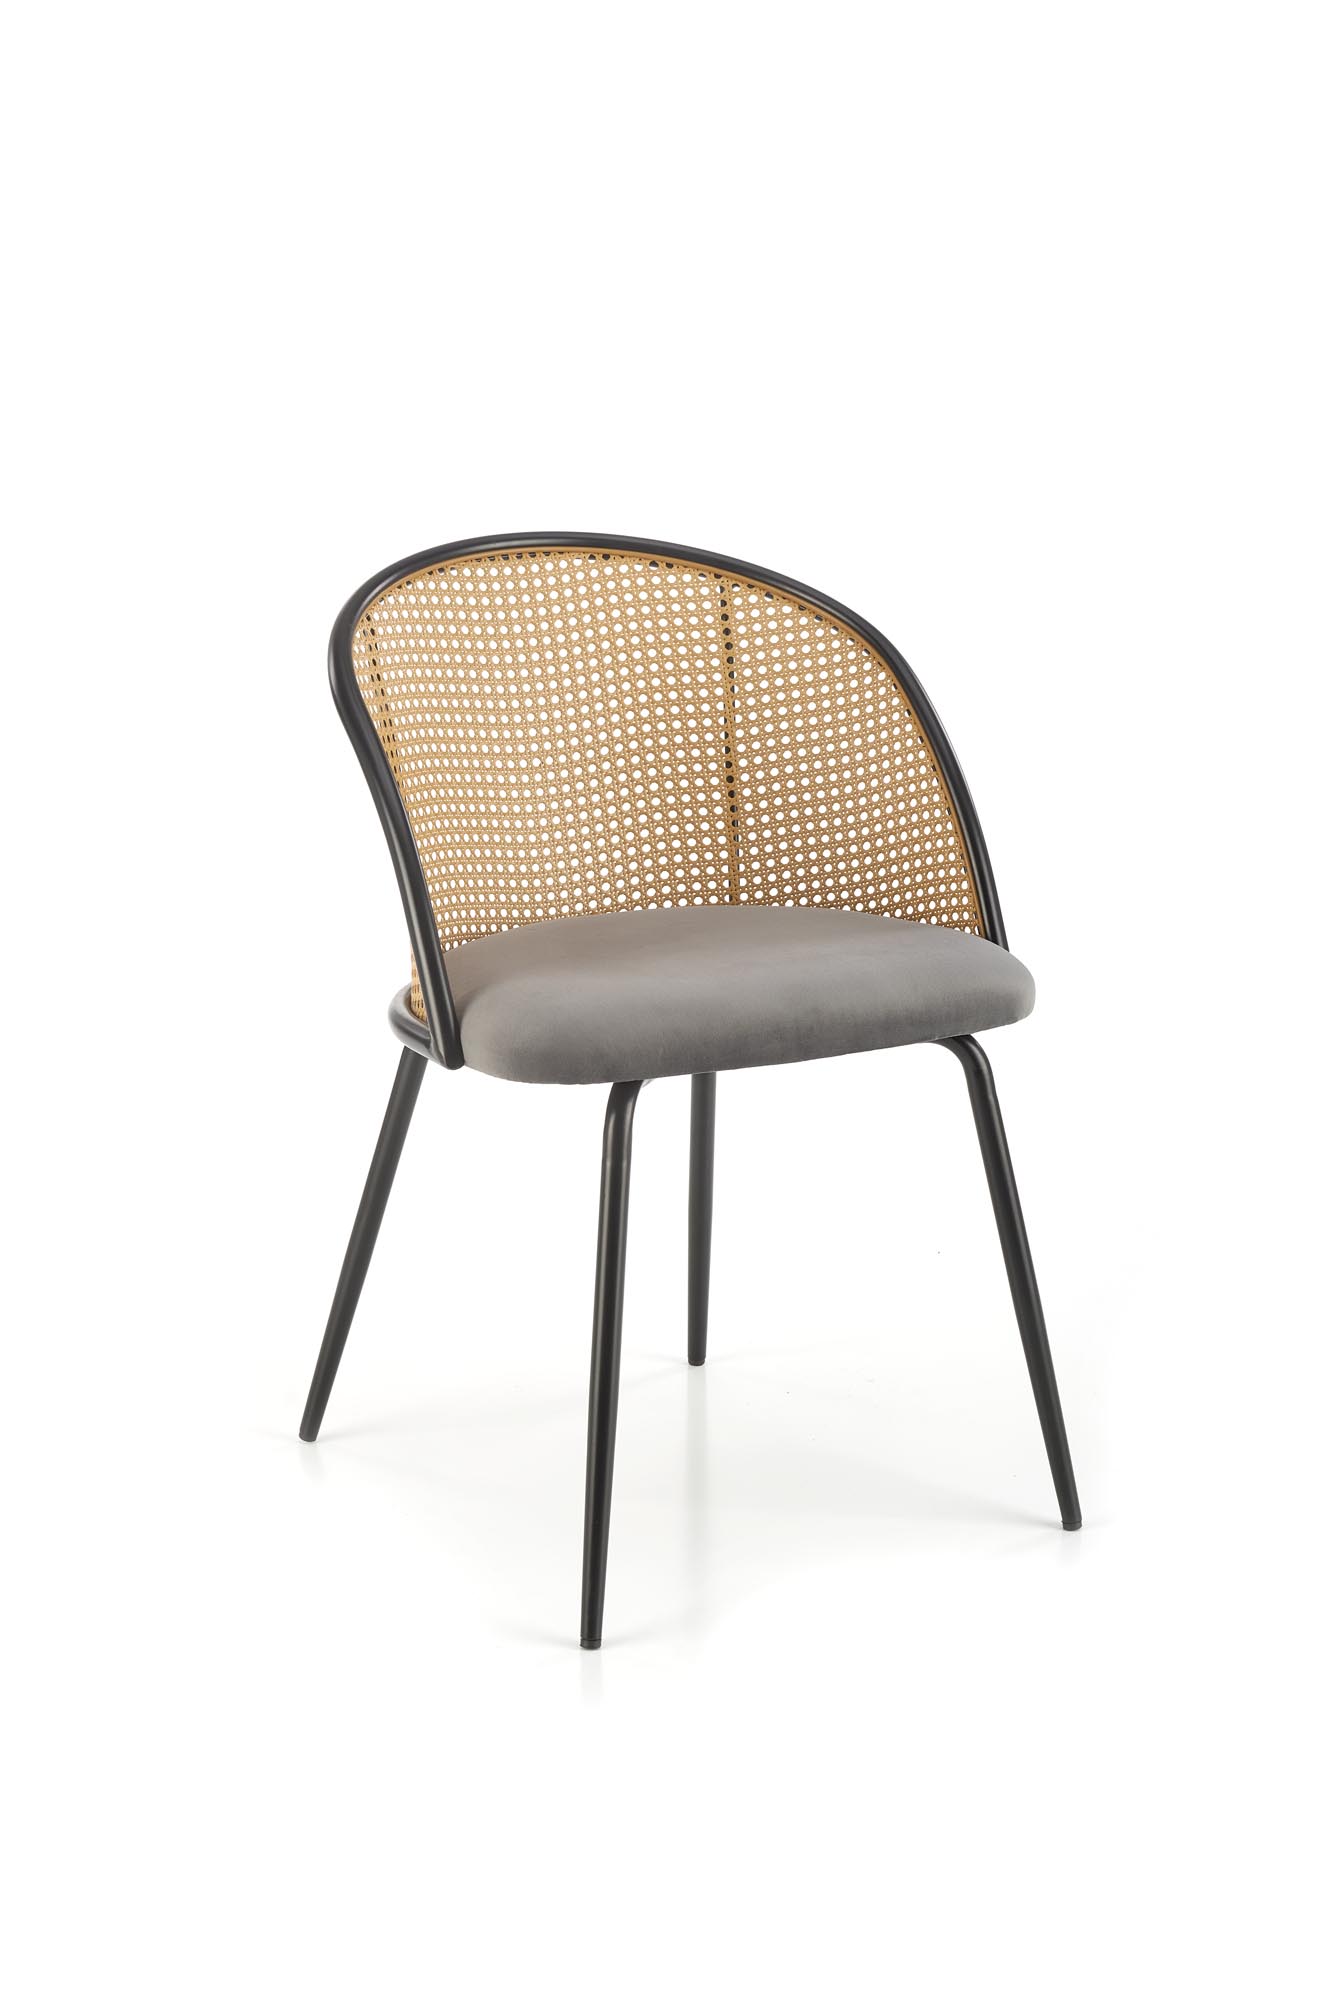 K508 Židle Popelový Židle s čalouněným sedákem k508 - Popelový